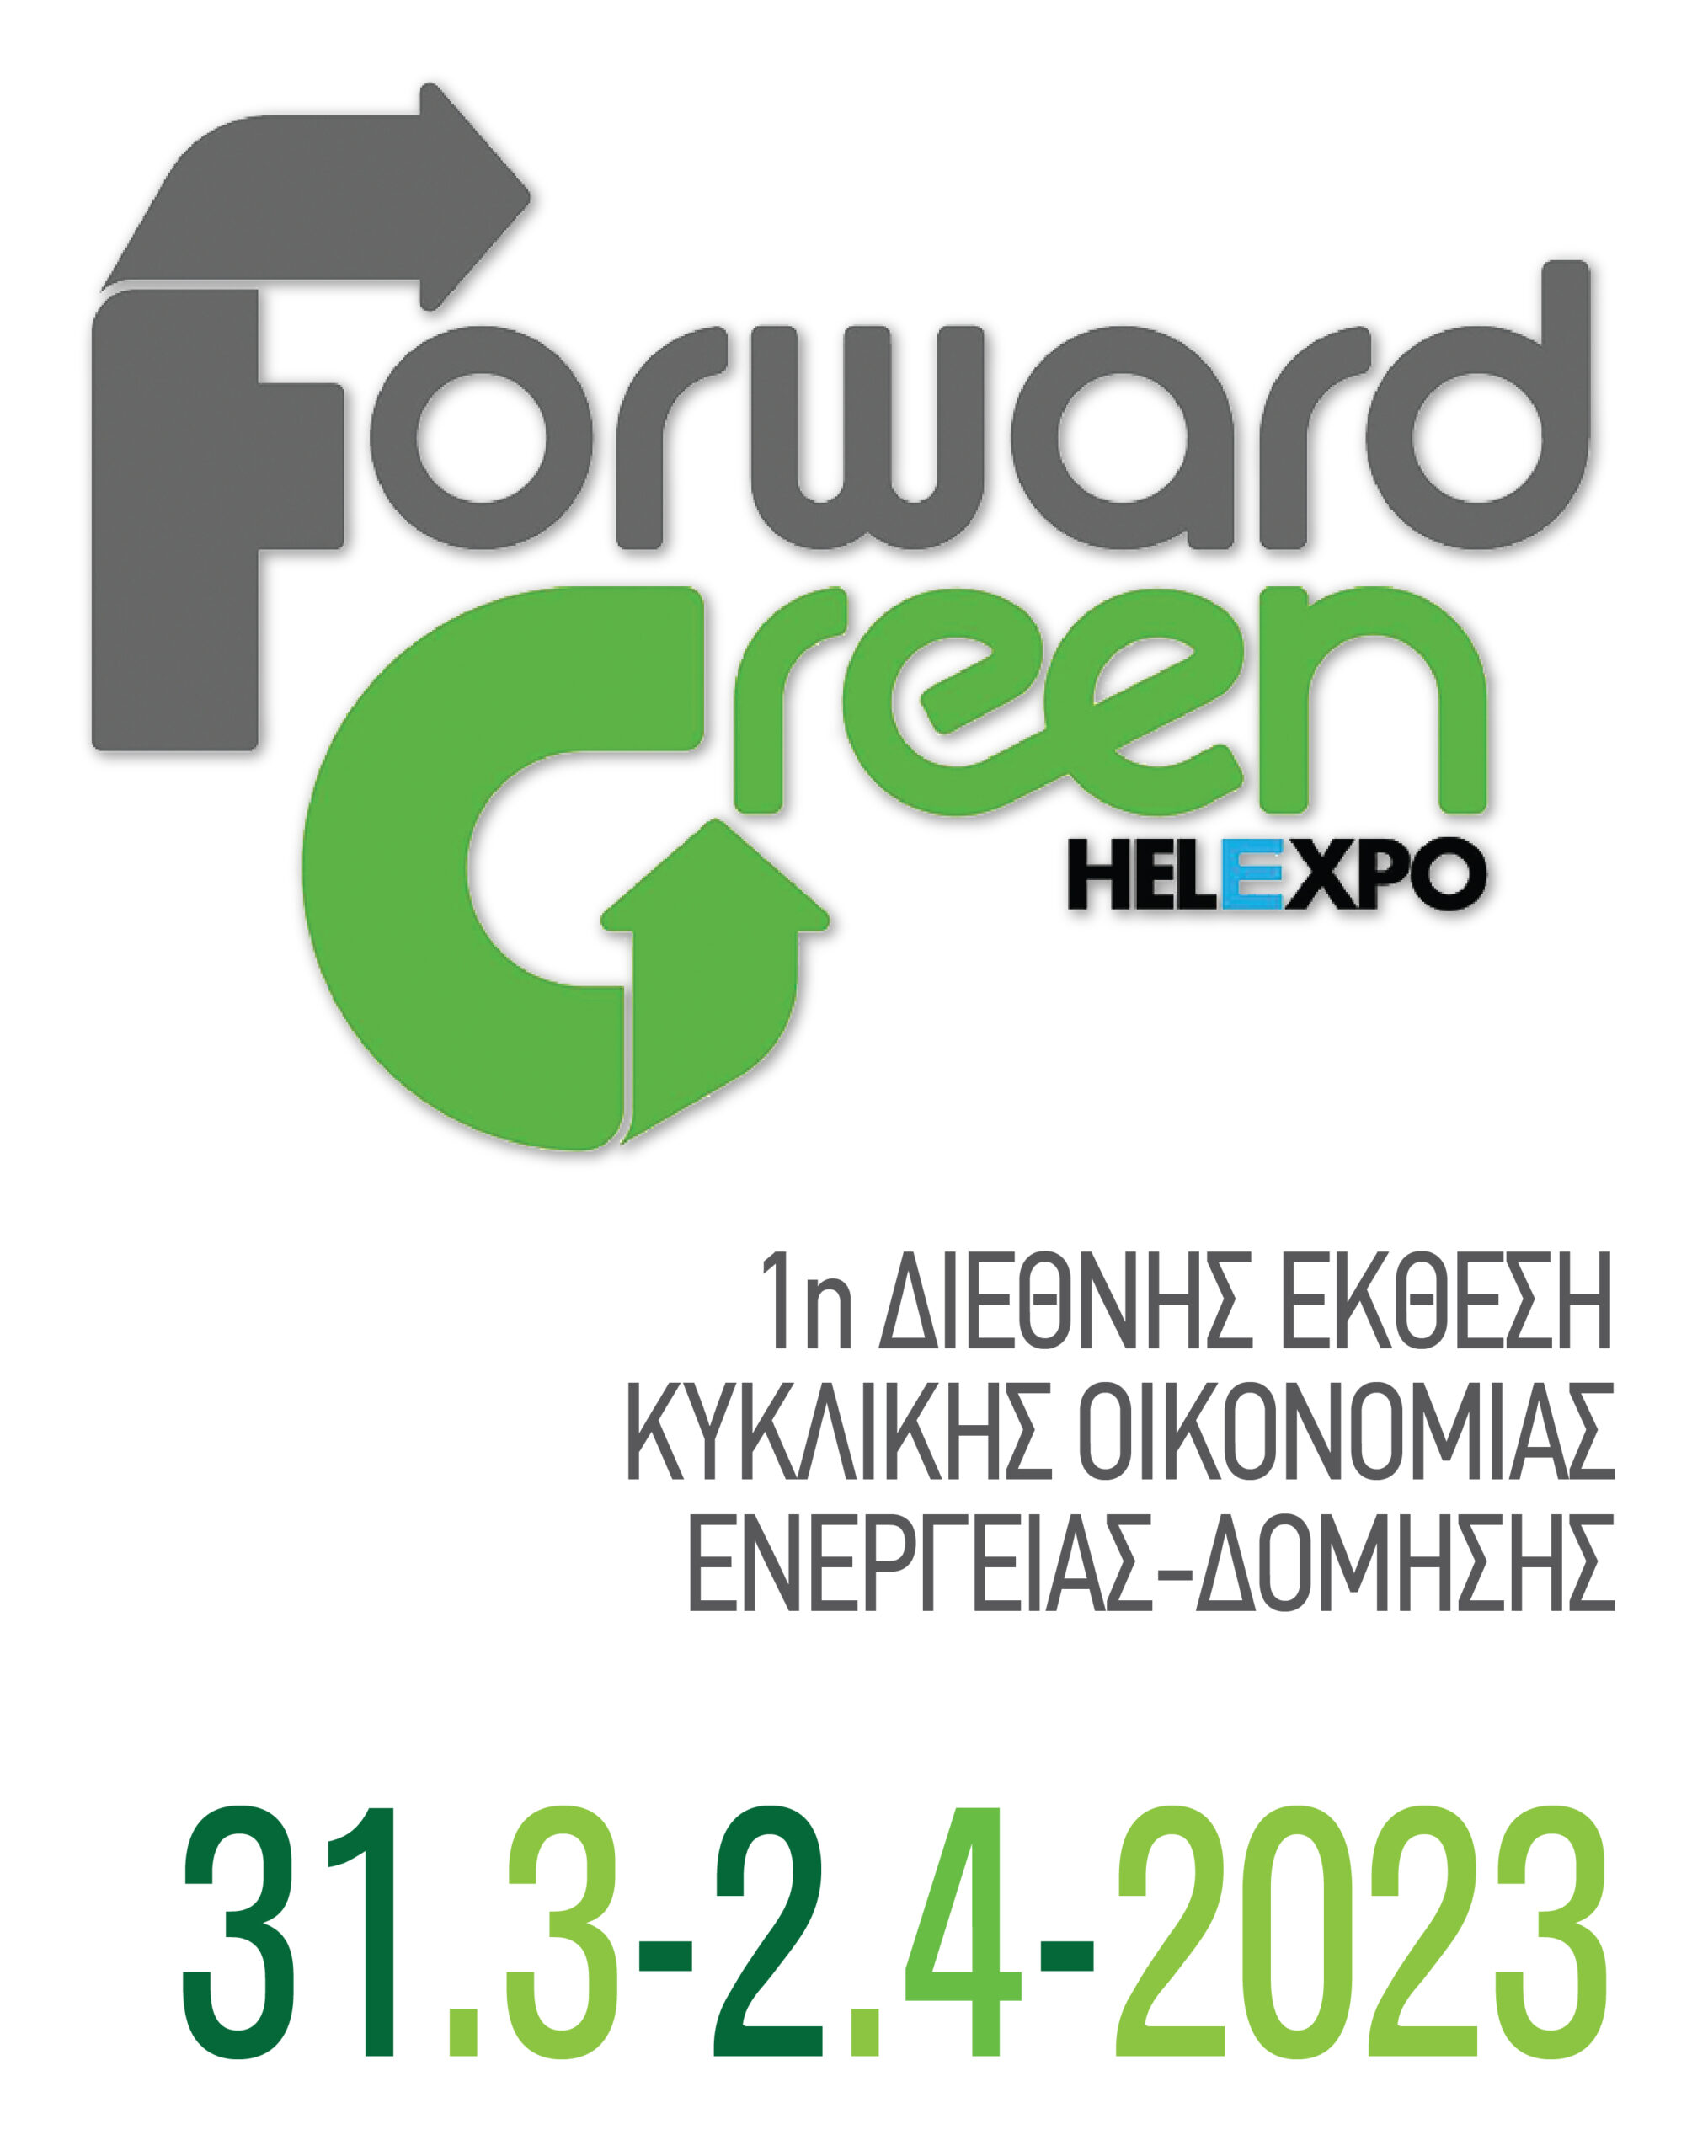 Η Βουλγαρία Τιμώμενη Χώρα  της 1ης Διεθνούς Έκθεσης Κυκλικής Οικονομίας,  Forward Green